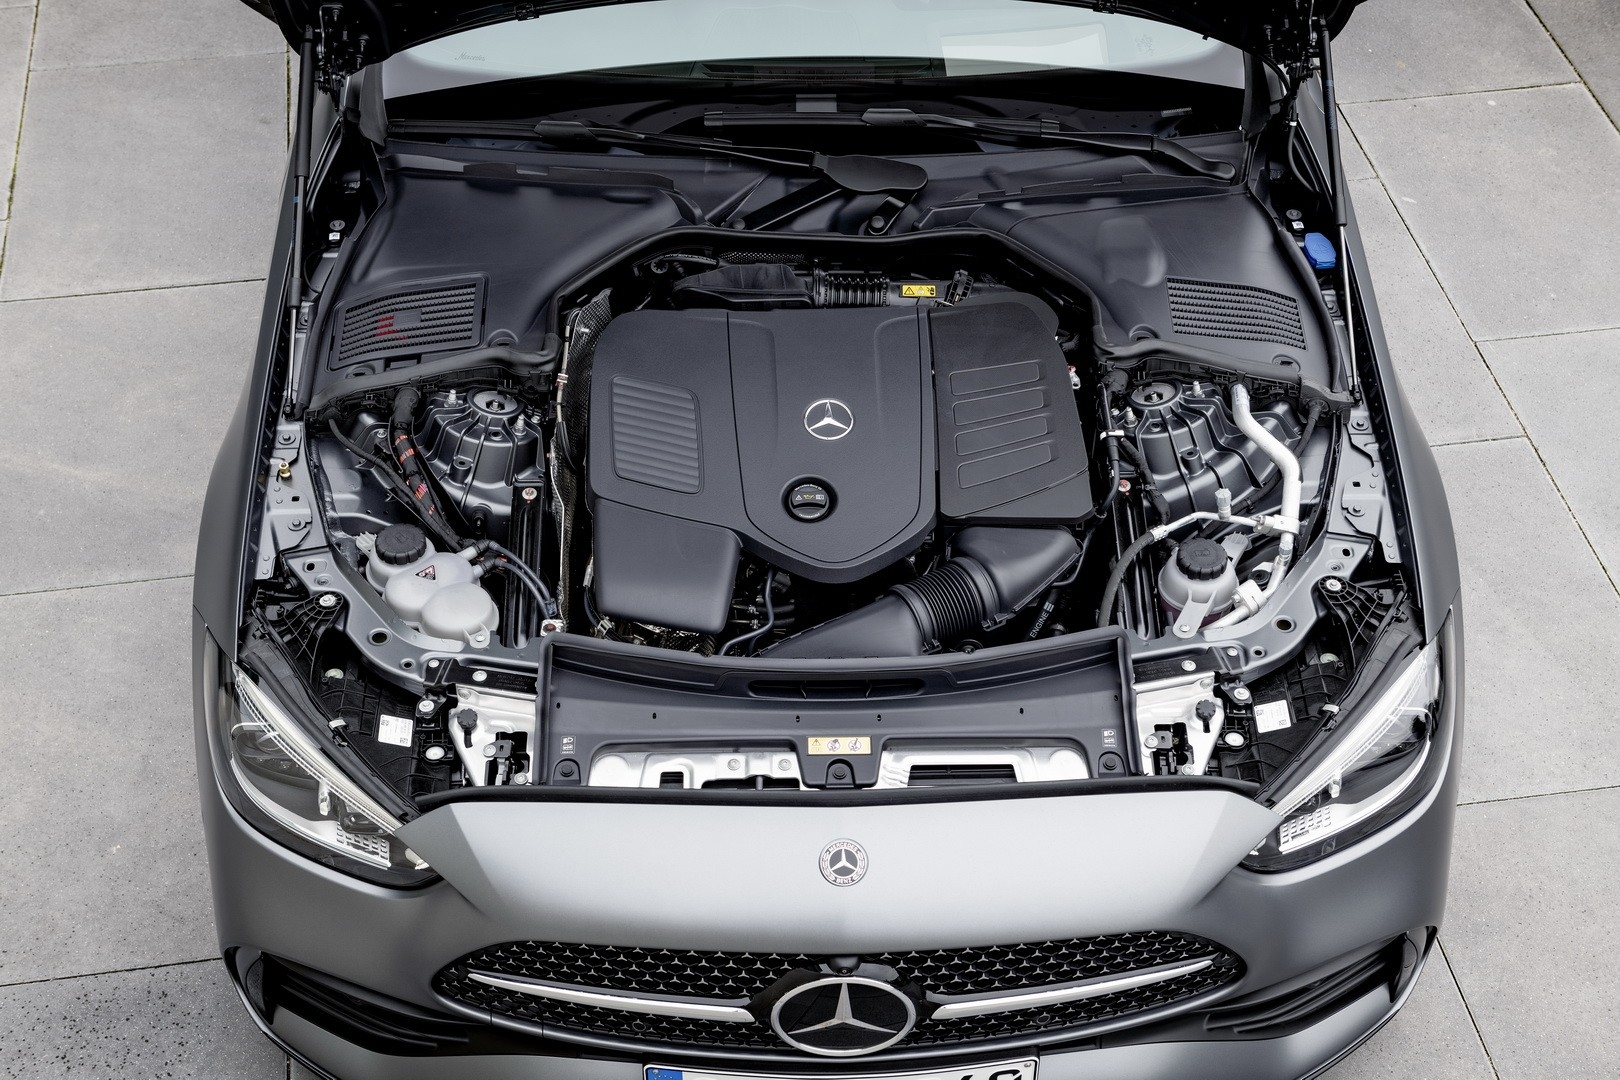 Mercedes-Benz C300 thế hệ mới về Việt Nam với giá từ 2,399 tỷ đồng